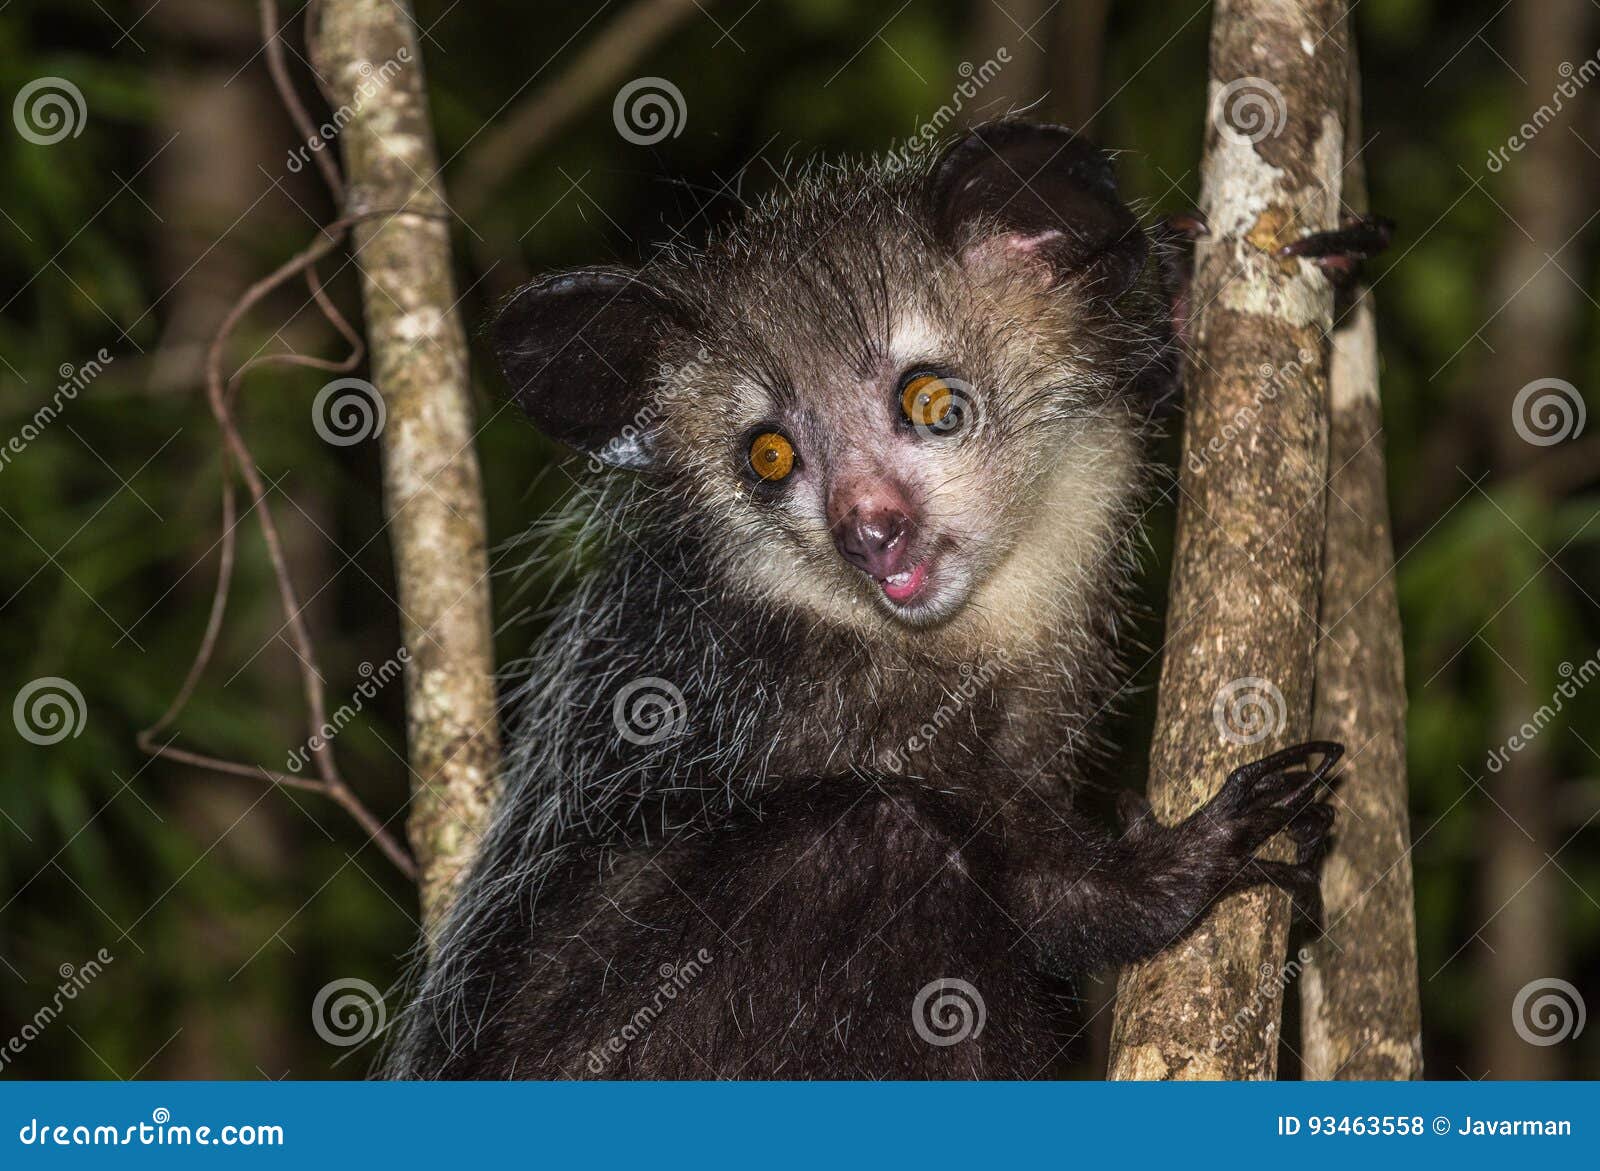 aye-aye, nocturnal lemur of madagascar